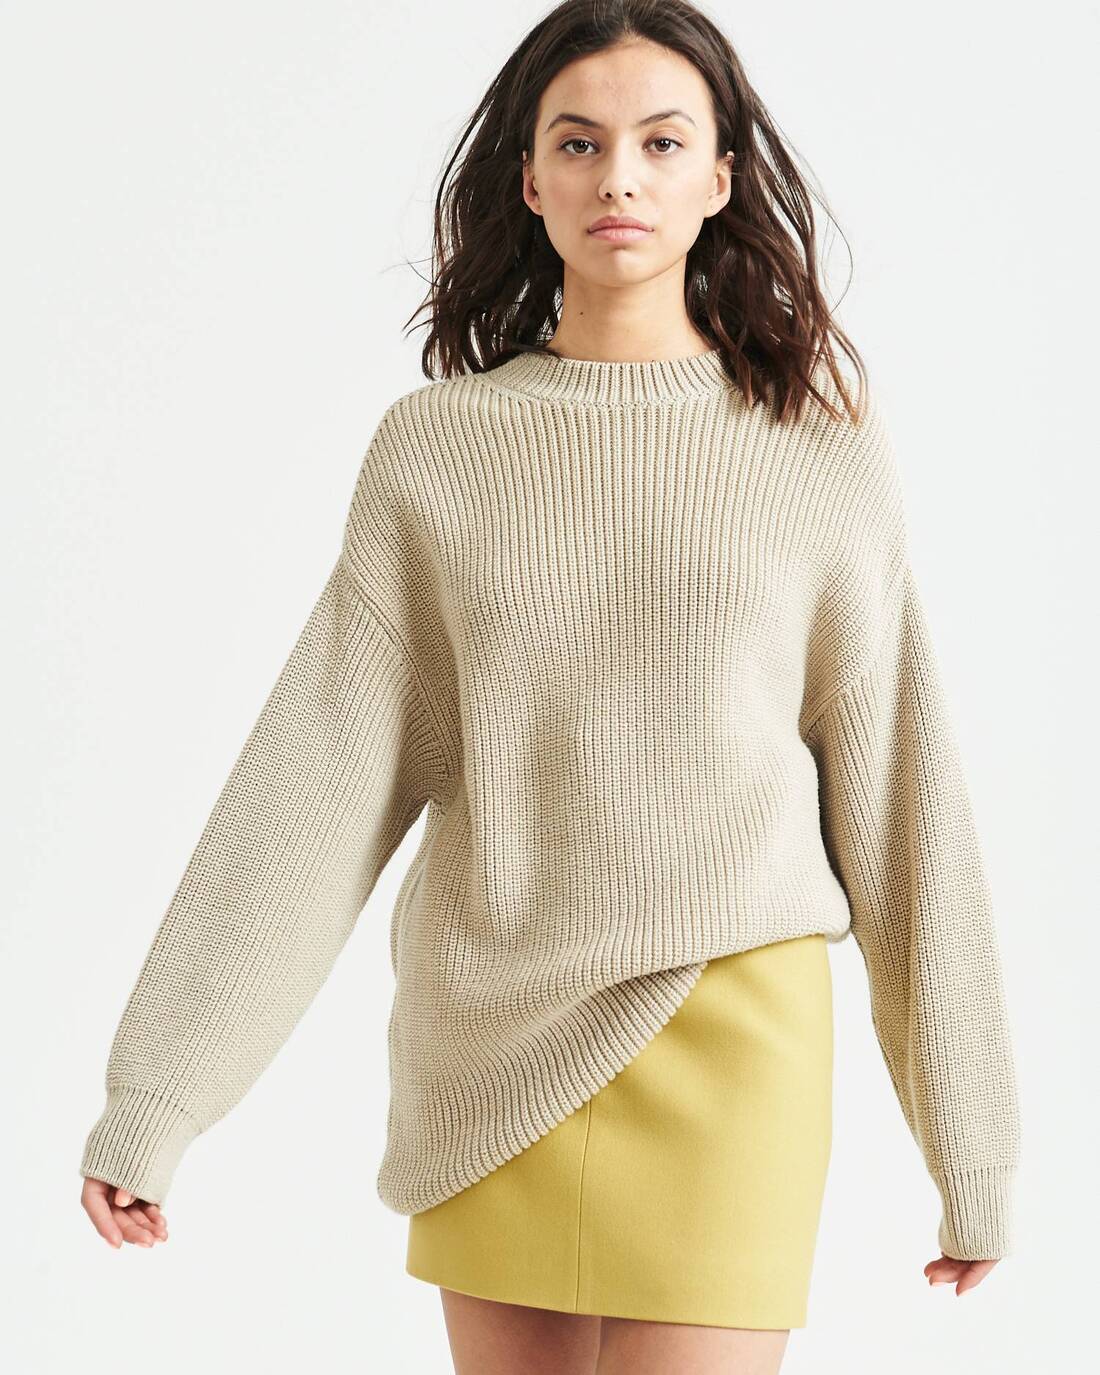 Elongated oversize knit sweater